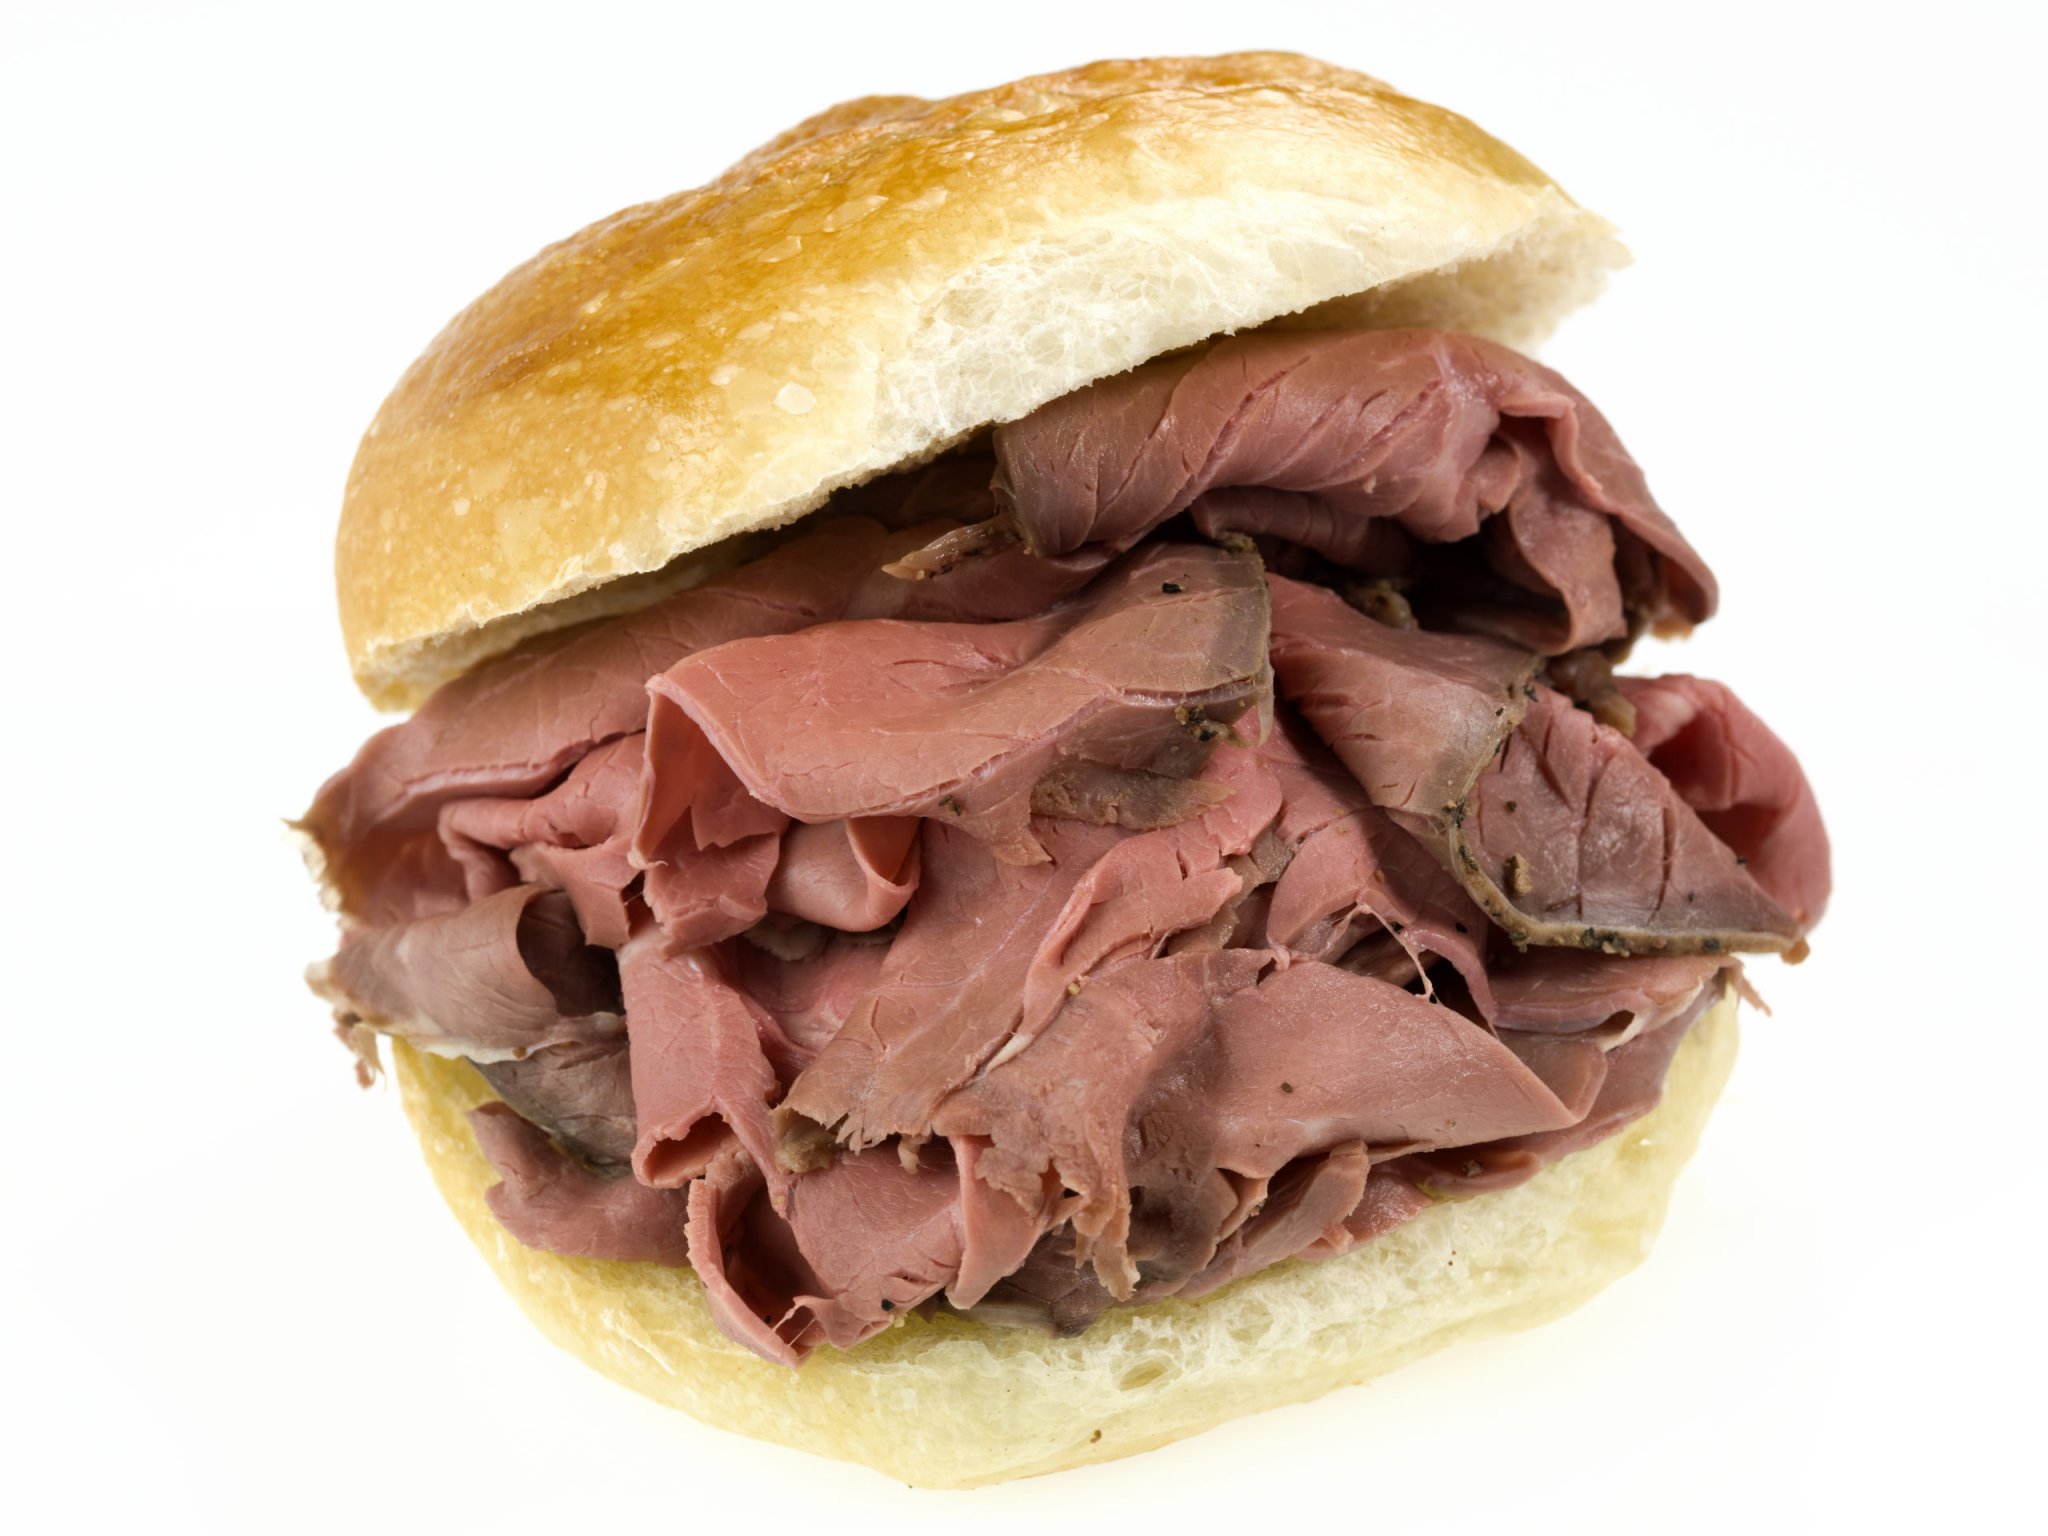 Roast-Beef-Sandwich-scaled-1563360242.jpg